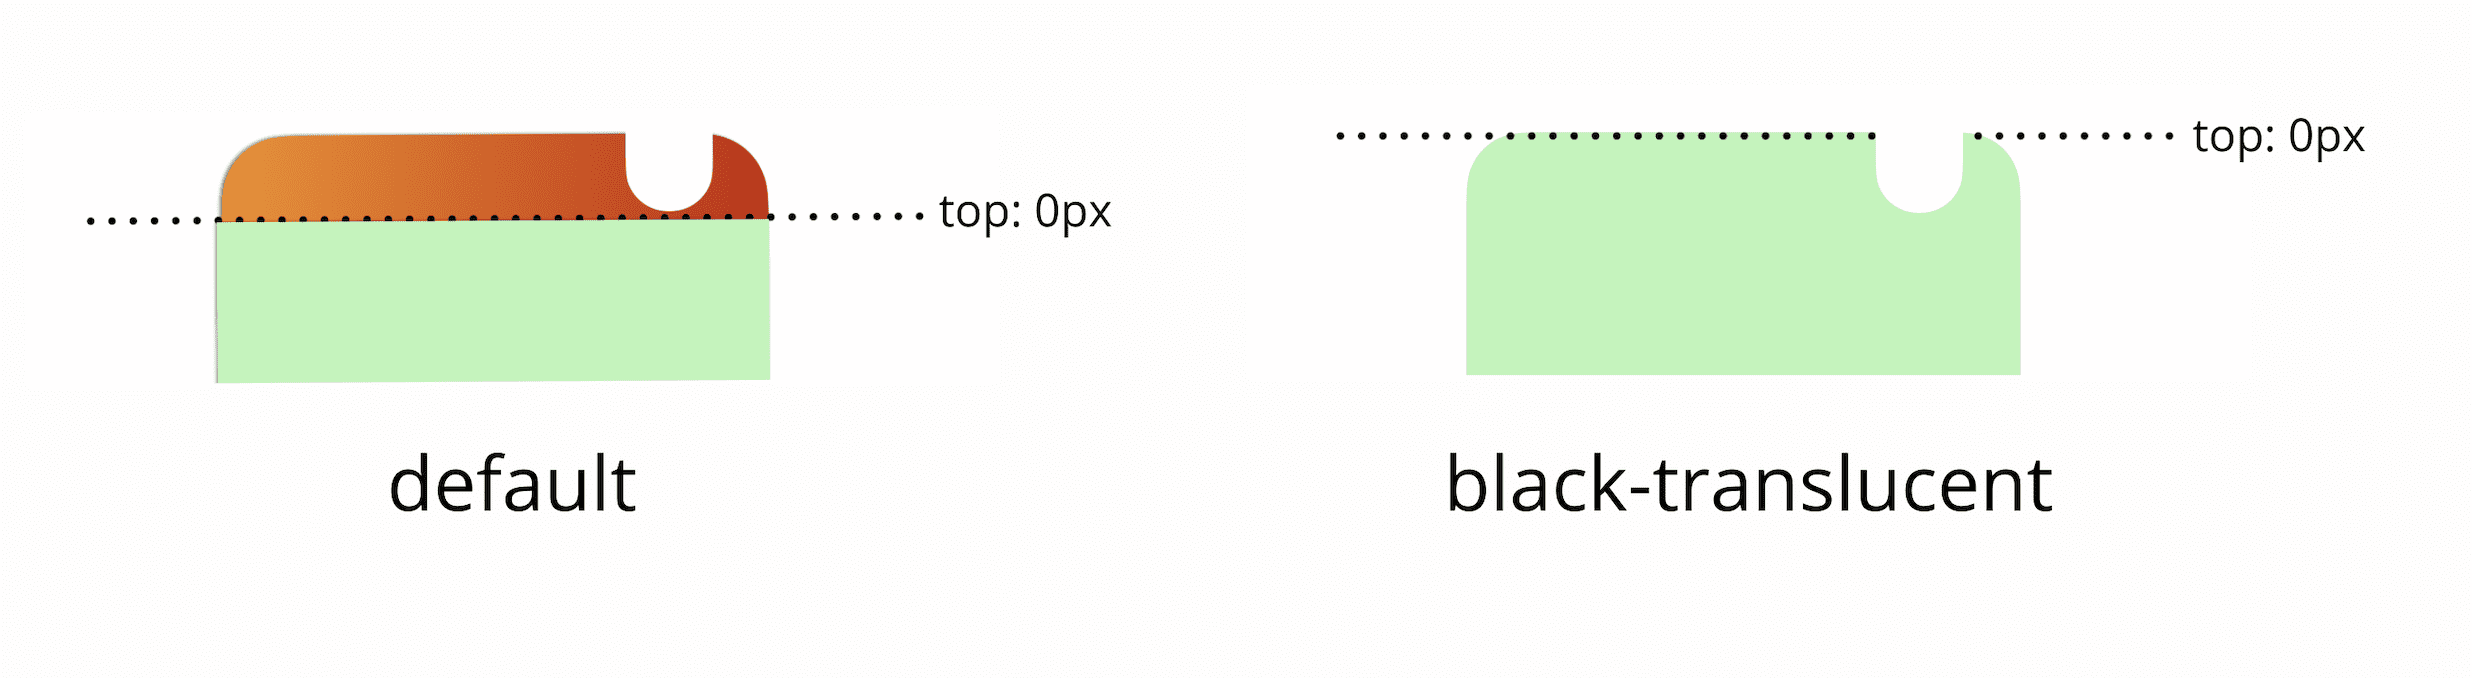 يكون الجزء العلوي 0 بكسل من إطار العرض أدنى من شريط الحالة تلقائيًا، وإذا أضفت علامة وصفية سوداء شفافة، فسيطابق الجزء العلوي 0 بكسل من إطار العرض الجزء العلوي الفعلي للشاشة.